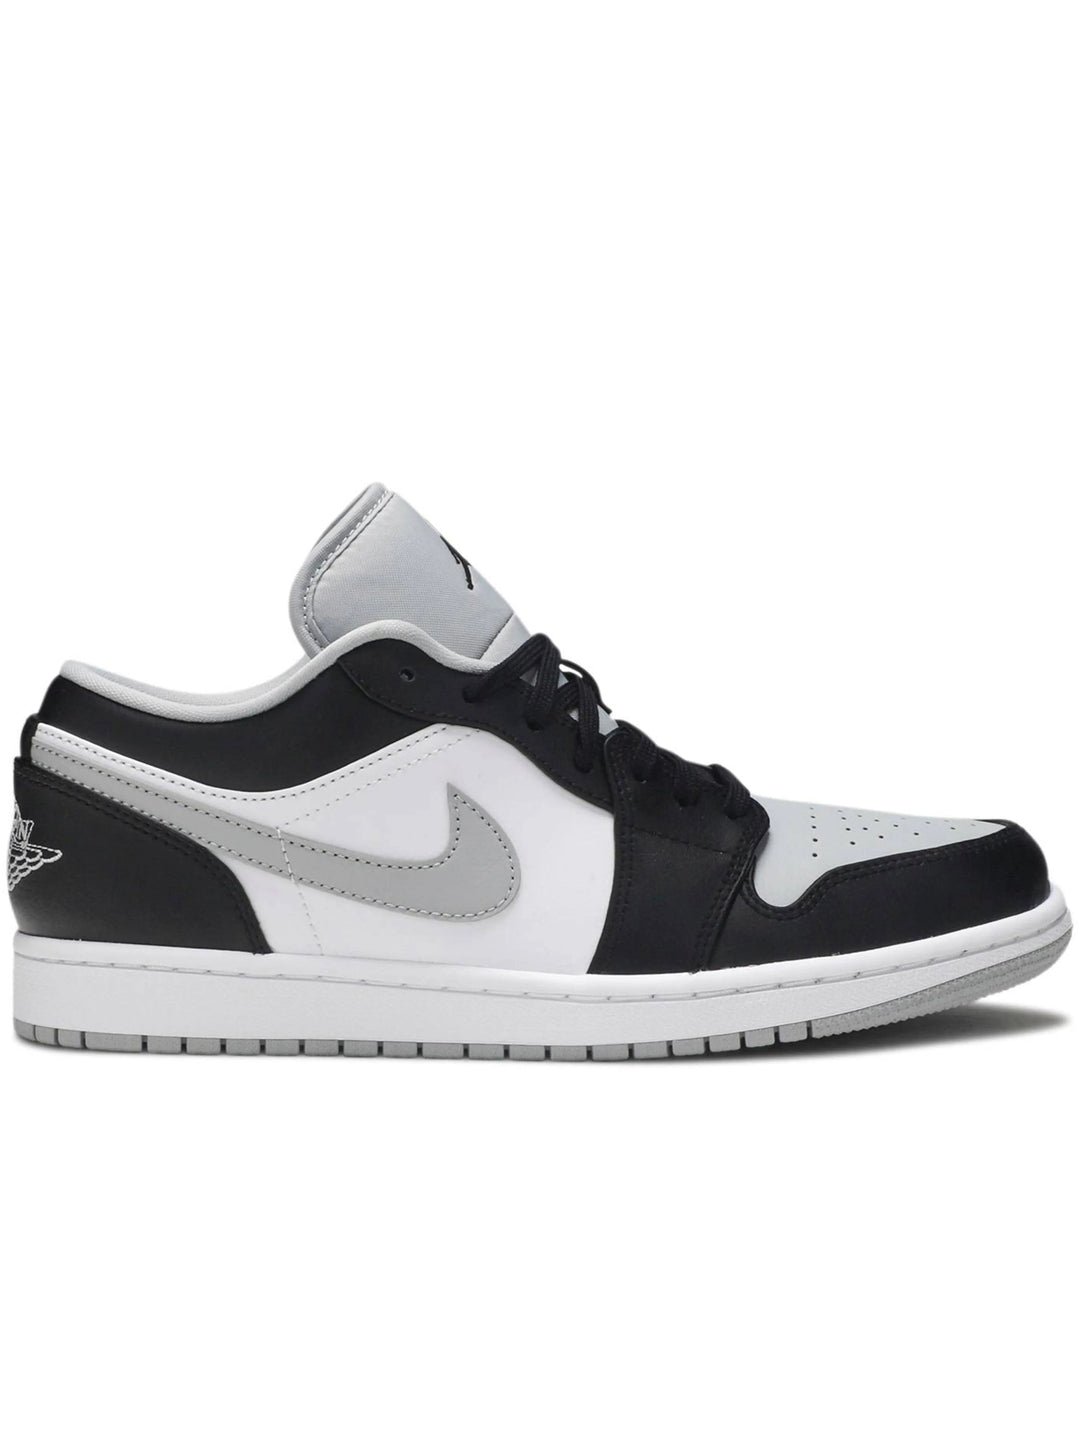 Nike Air Jordan 1 Low Smoke Grey Prior